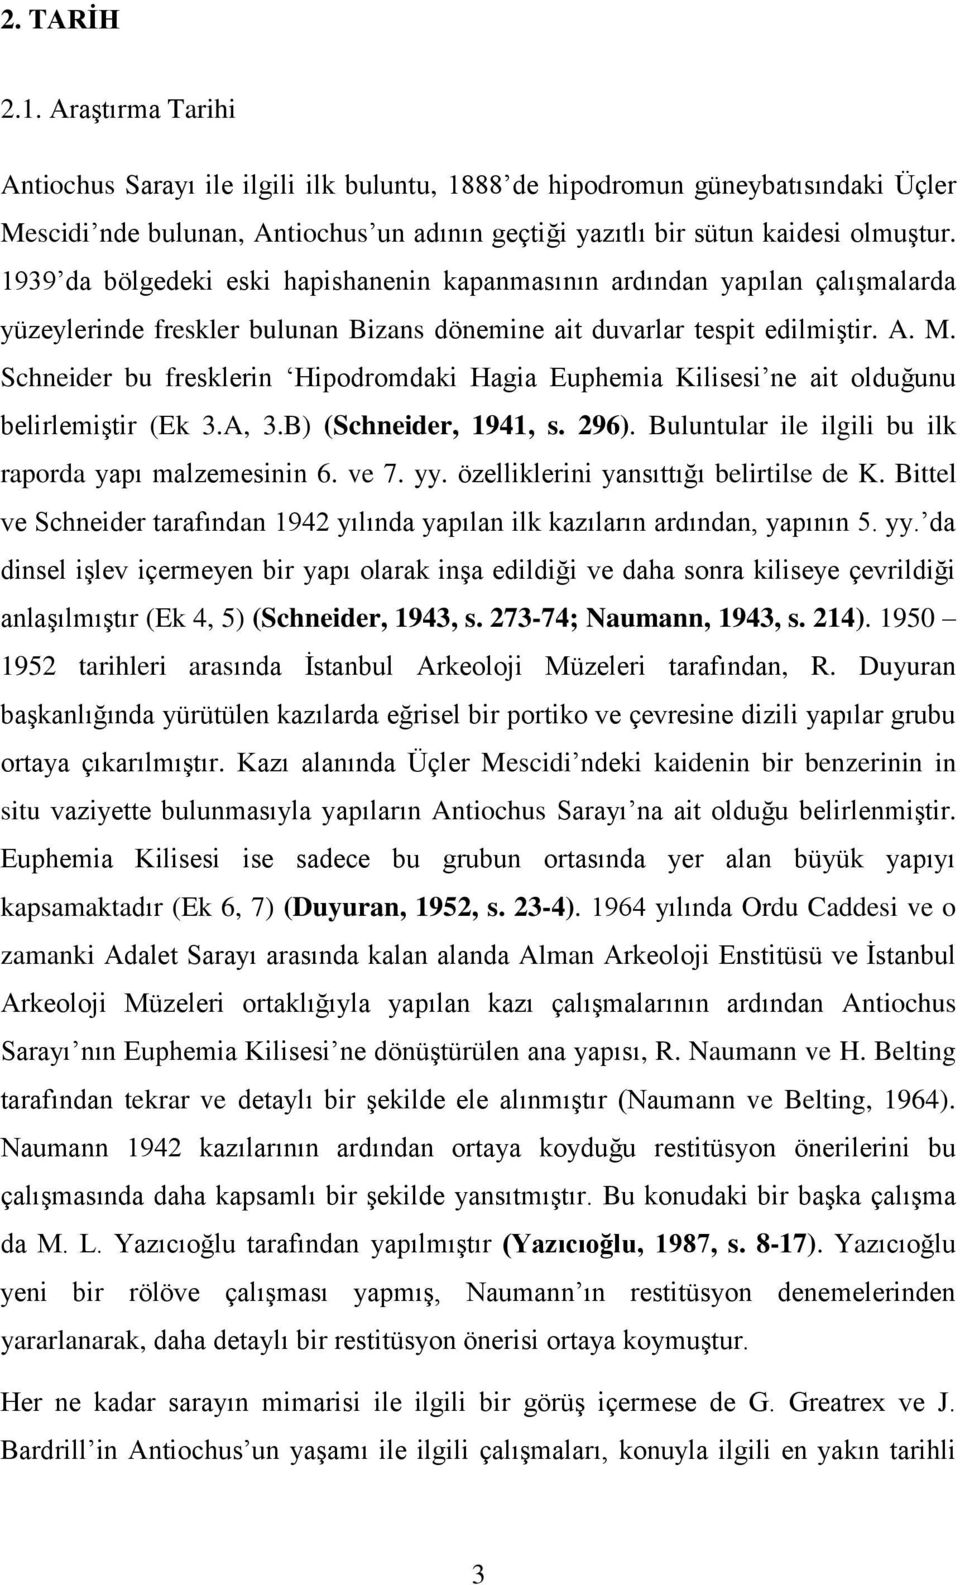 Schneider bu fresklerin Hipodromdaki Hagia Euphemia Kilisesi ne ait olduğunu belirlemiştir (Ek 3.A, 3.B) (Schneider, 1941, s. 296). Buluntular ile ilgili bu ilk raporda yapı malzemesinin 6. ve 7. yy.